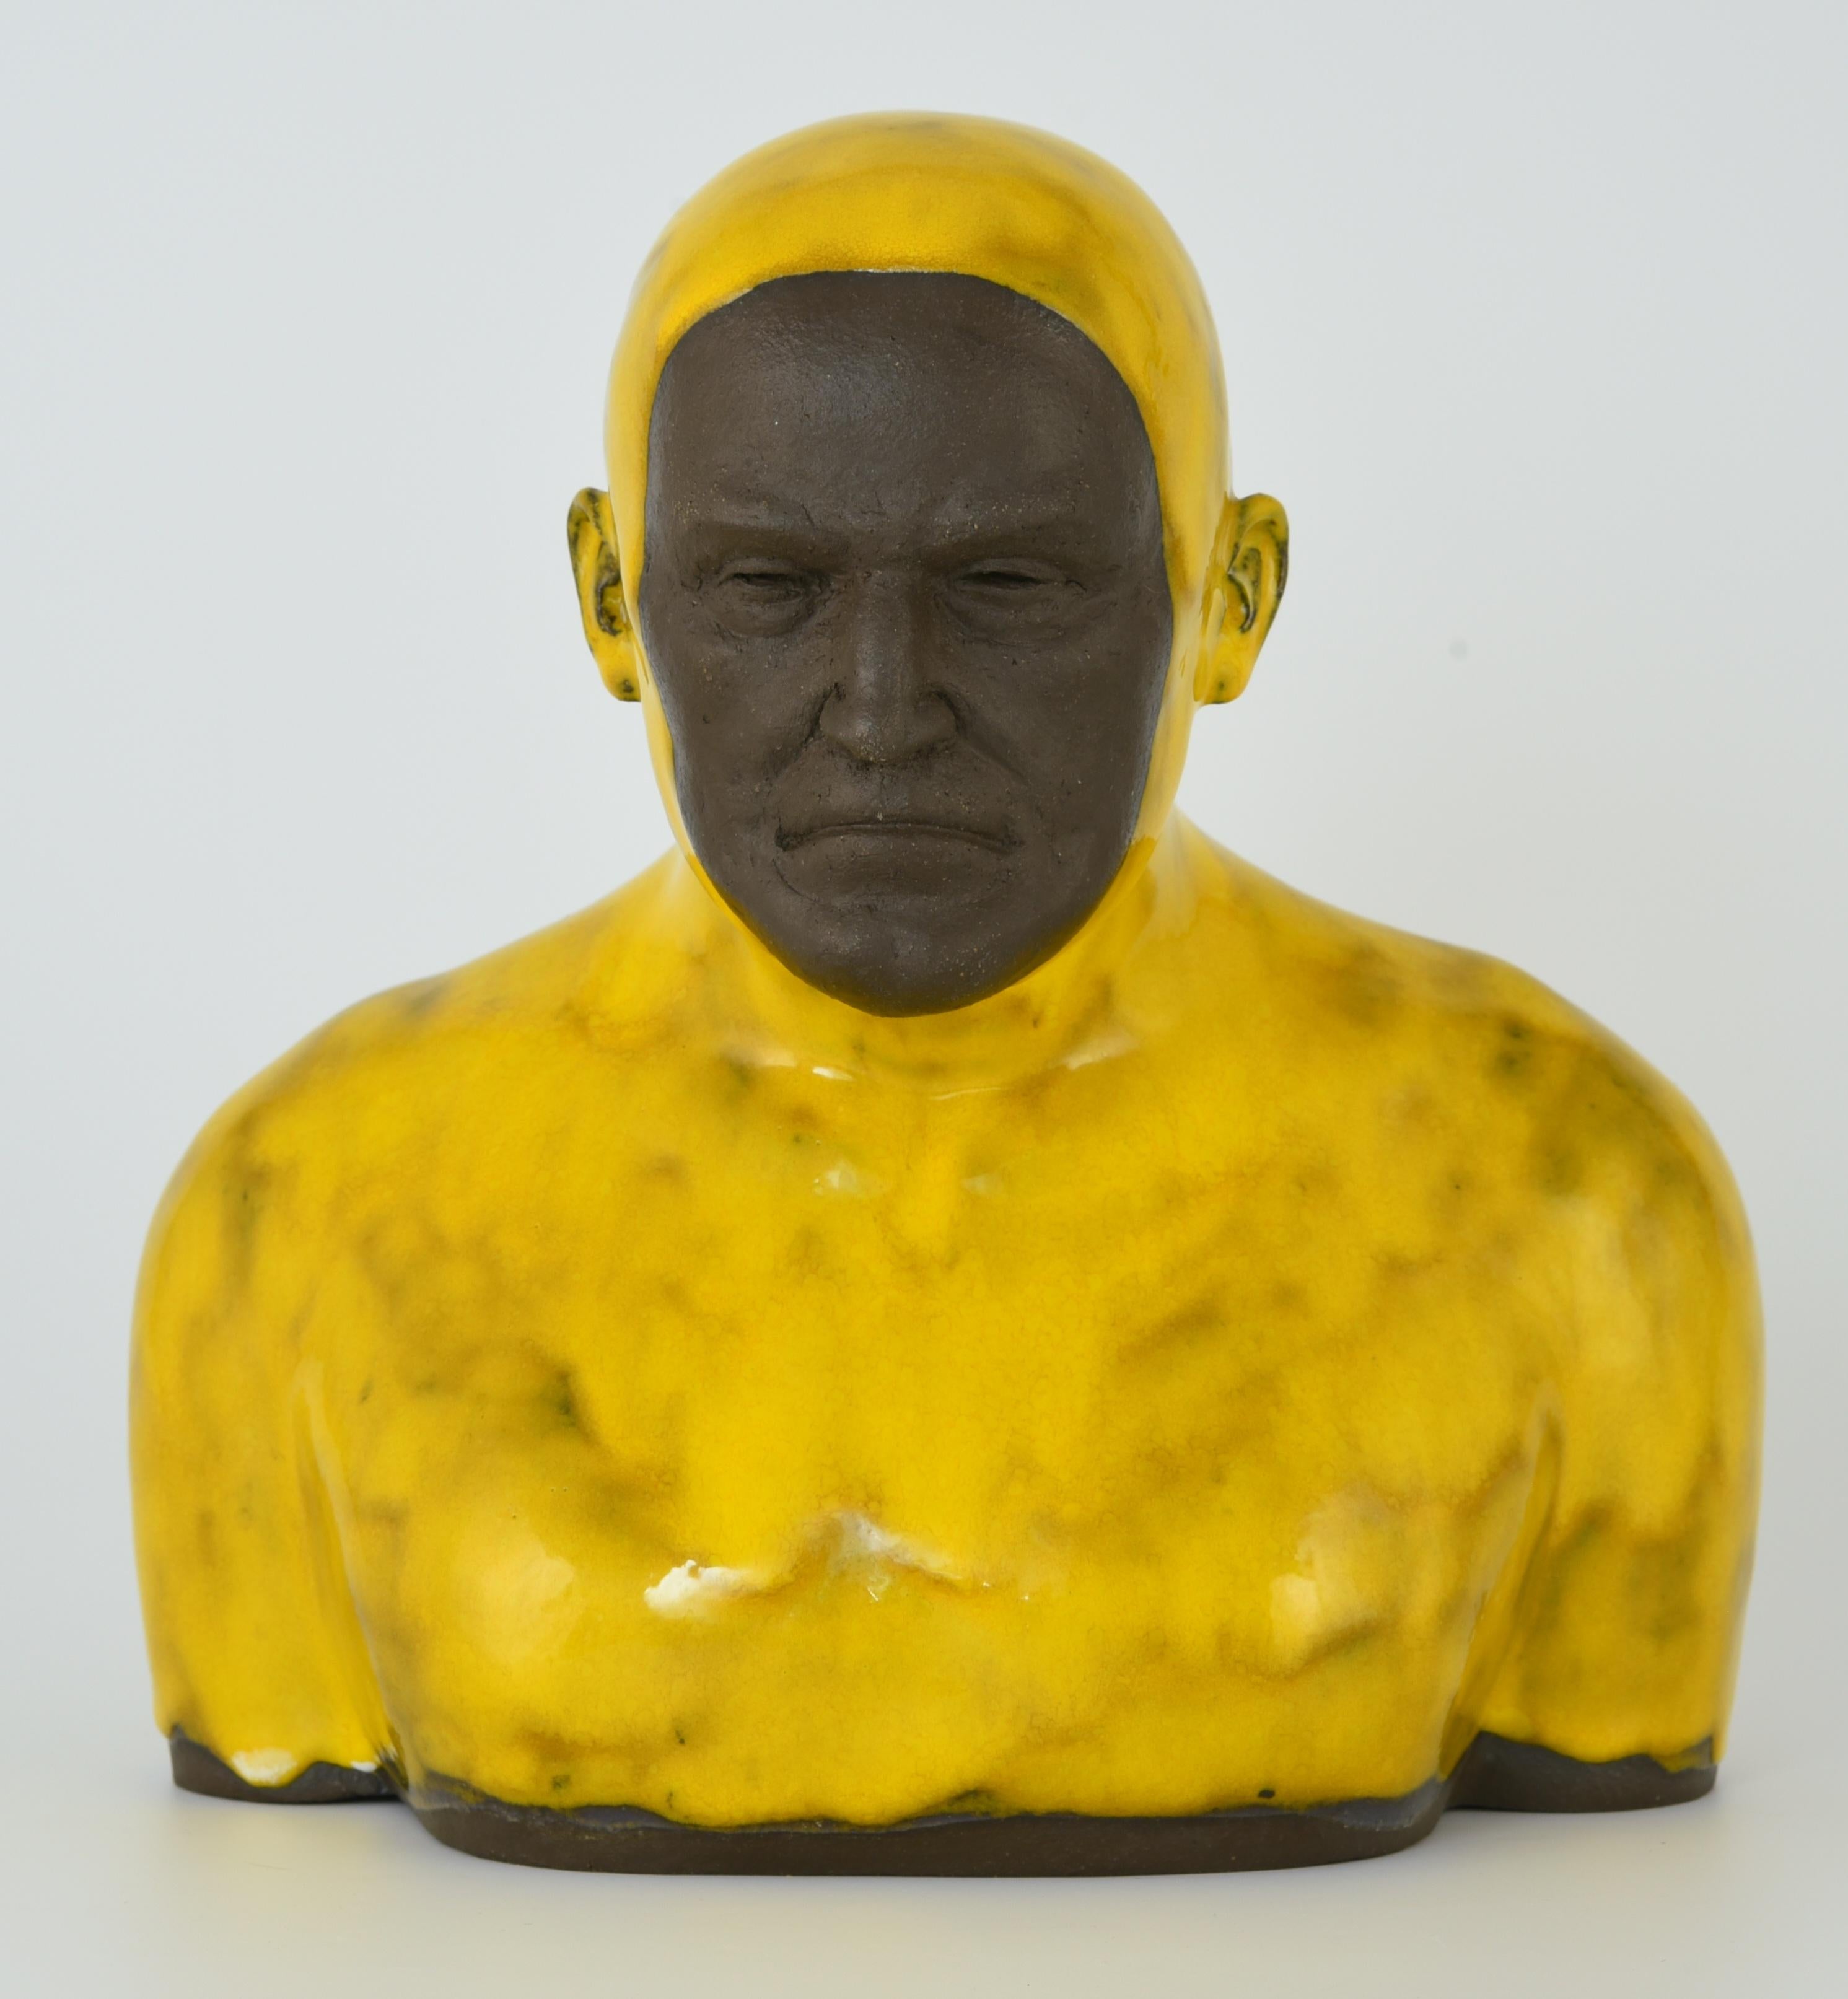 Gelber Swimmer 2 Groß – handgefertigte moderne glasierte Keramikskulptur eines Mannes, Porträt